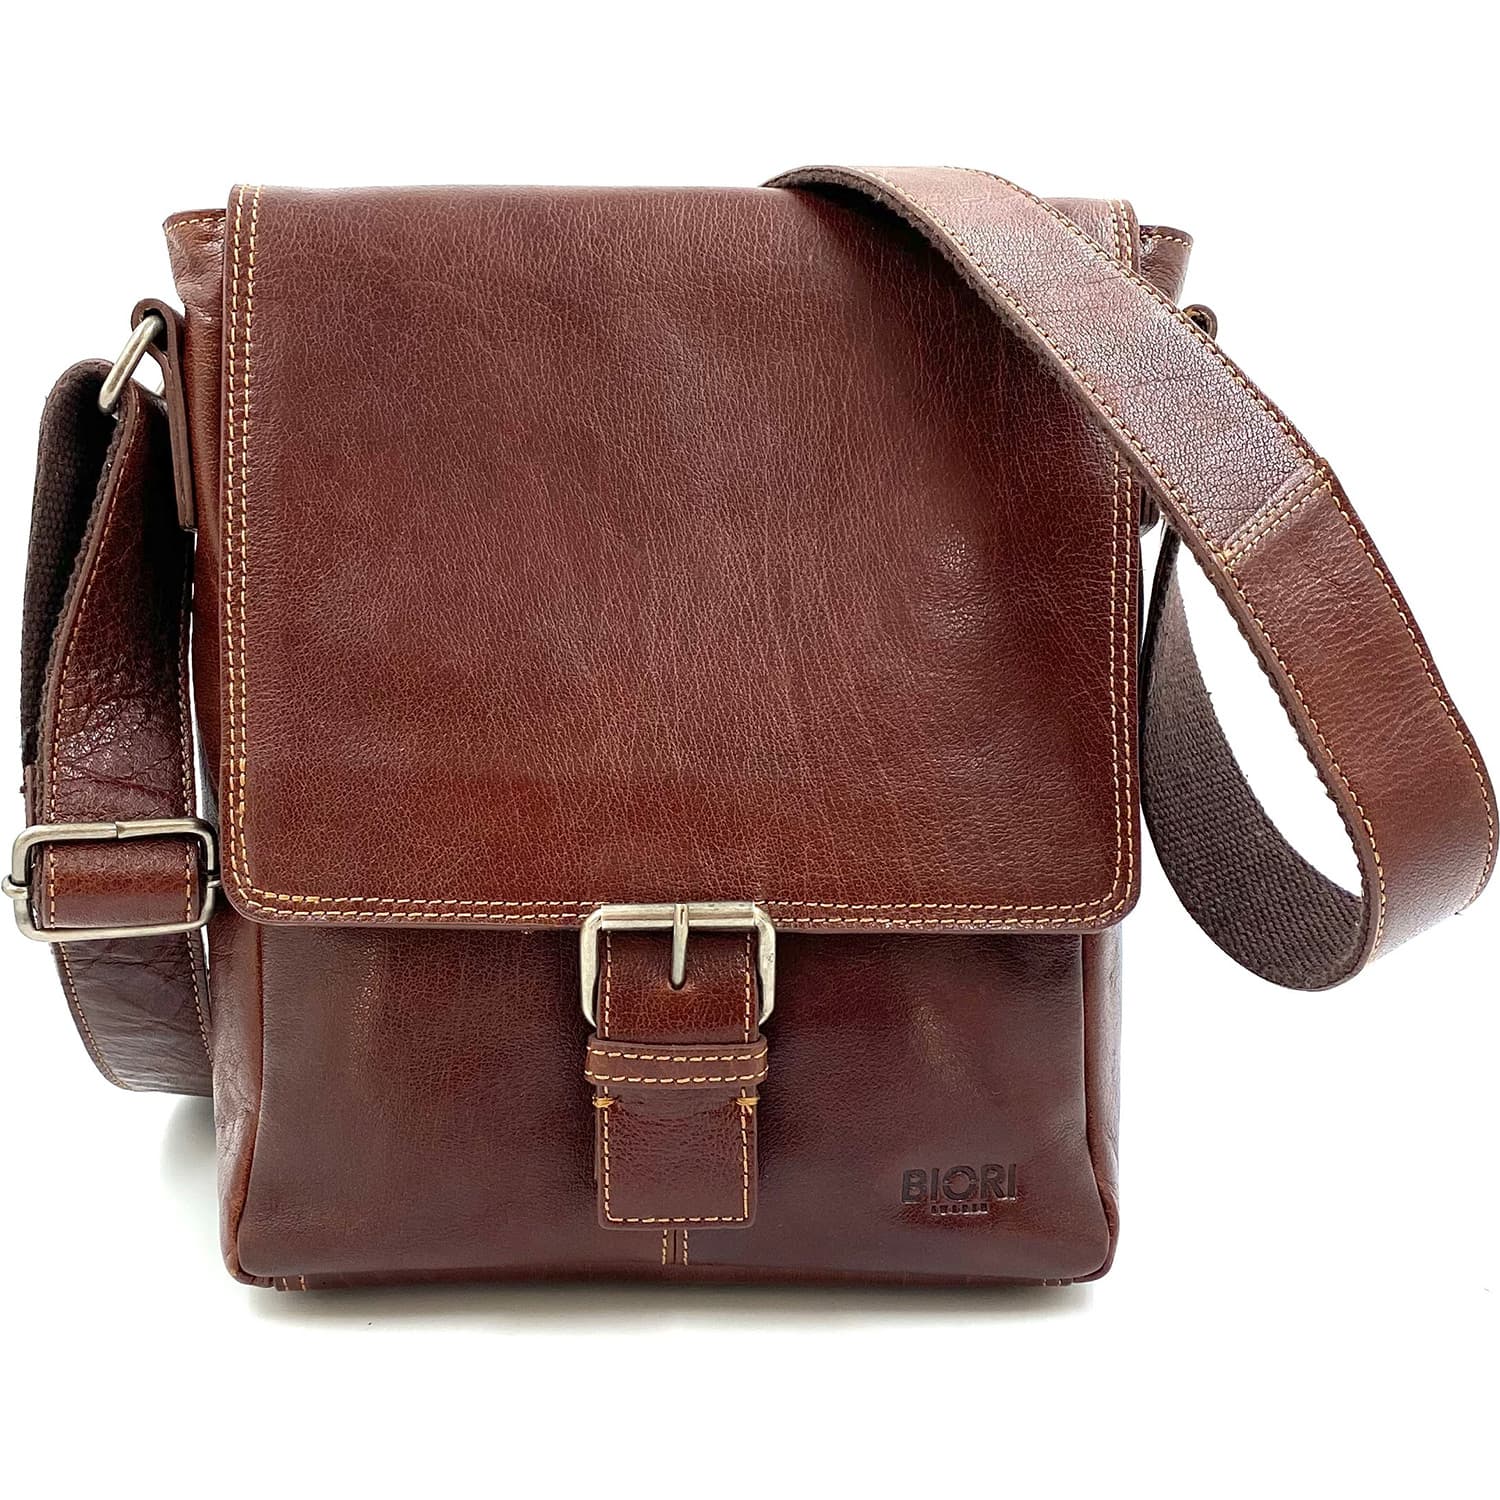 Handväska i skinn BIORI 5042-B. Brun väska med klaff med dragkedja under klaffen. Brett axelband. Väskan rymmer i normalstor Ipad.